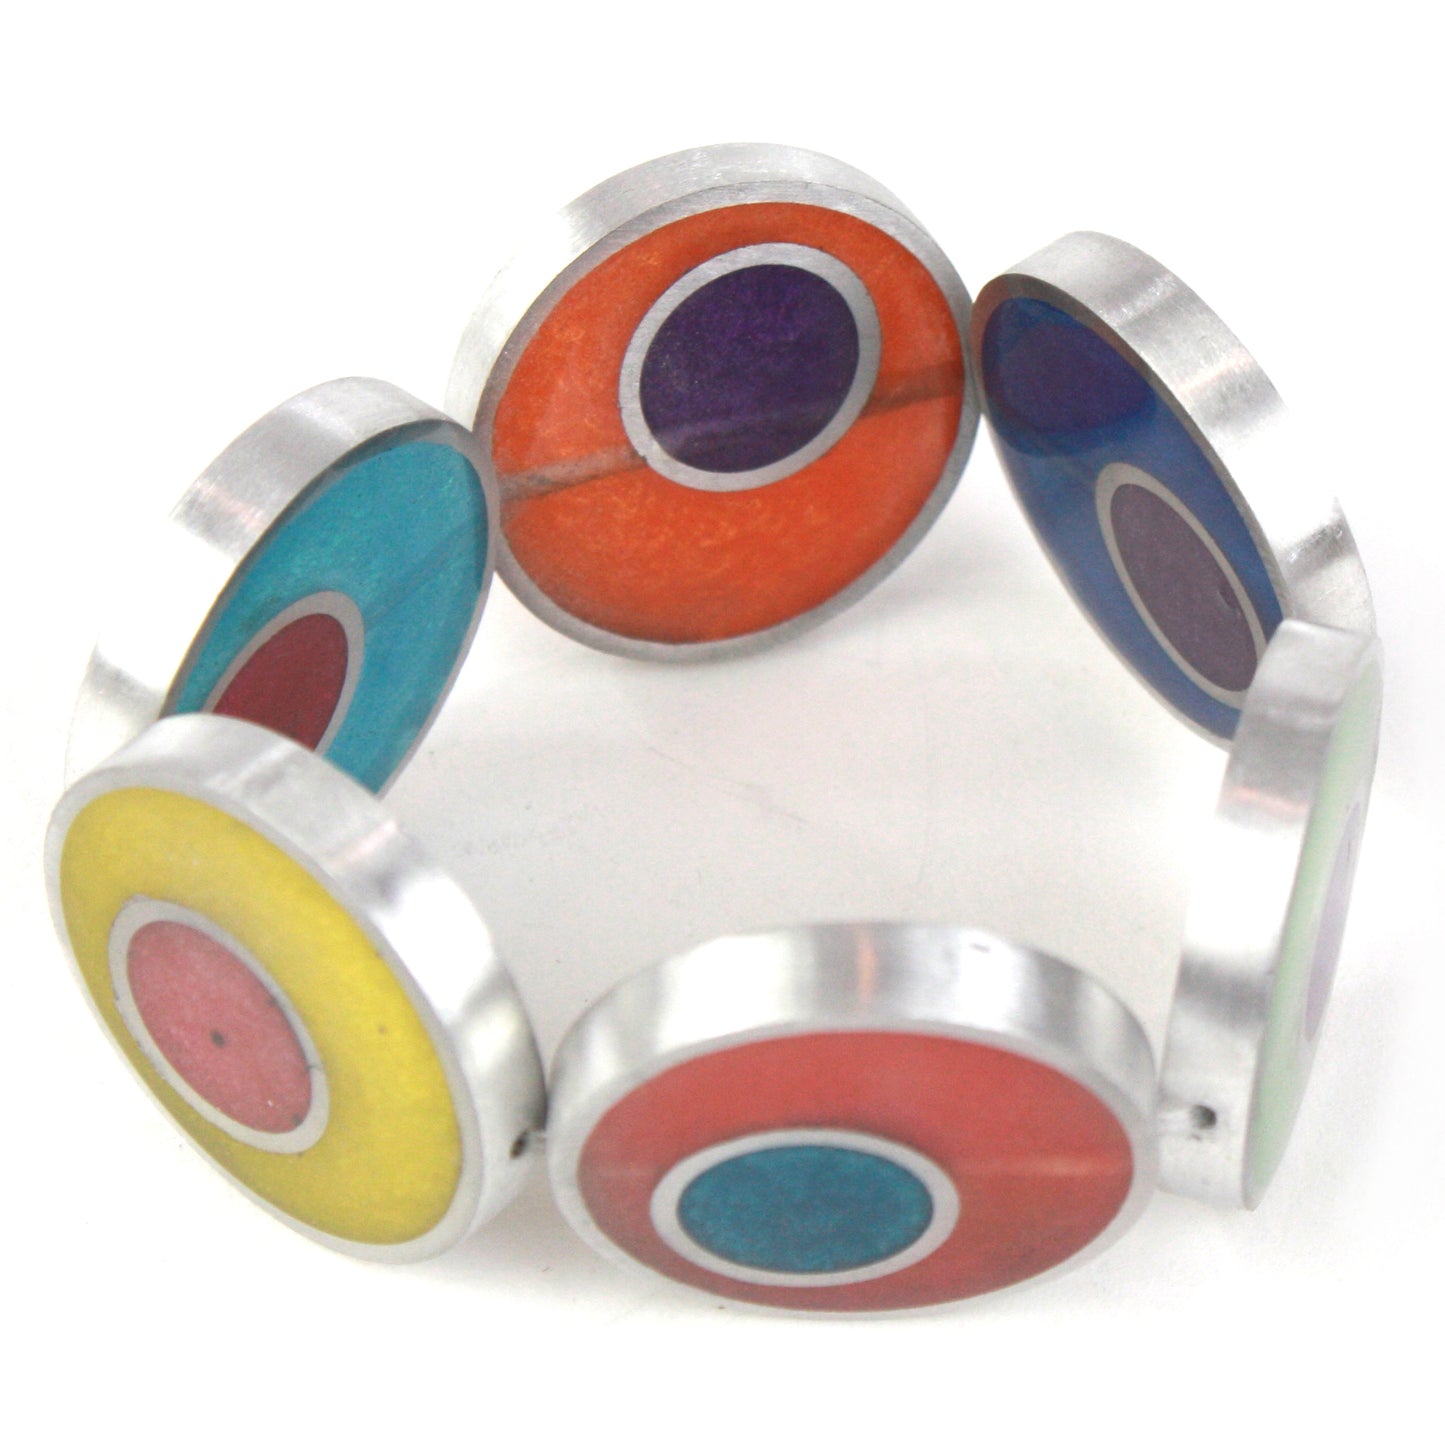 Resinique double circle bracelet - Multi colored